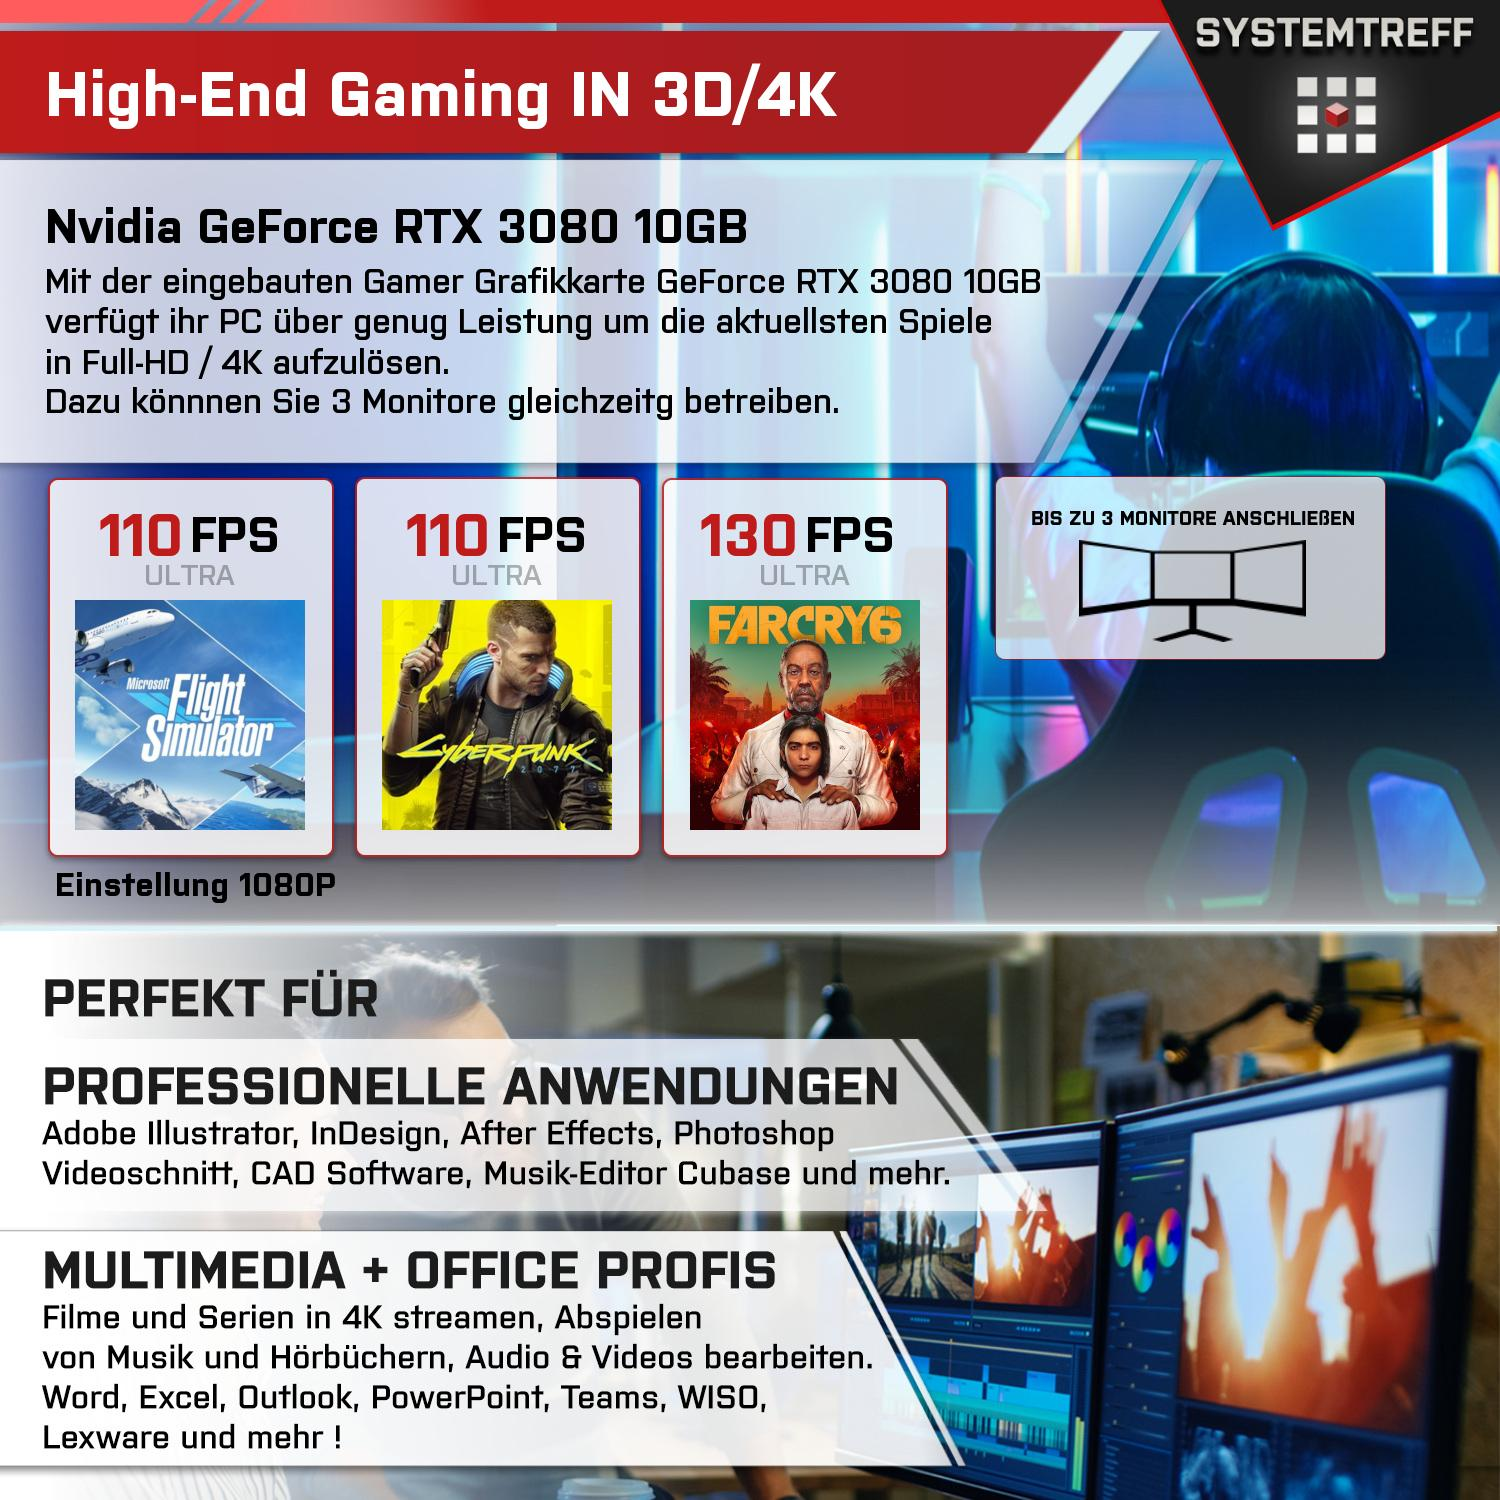 SYSTEMTREFF Gaming Komplett AMD Ryzen mit 32 RTX Nvidia 5950X, GeForce GB mSSD, 3080 GDDR6X, RAM, GB 10 Komplett Prozessor, 5950X 1000 9 10GB GB PC